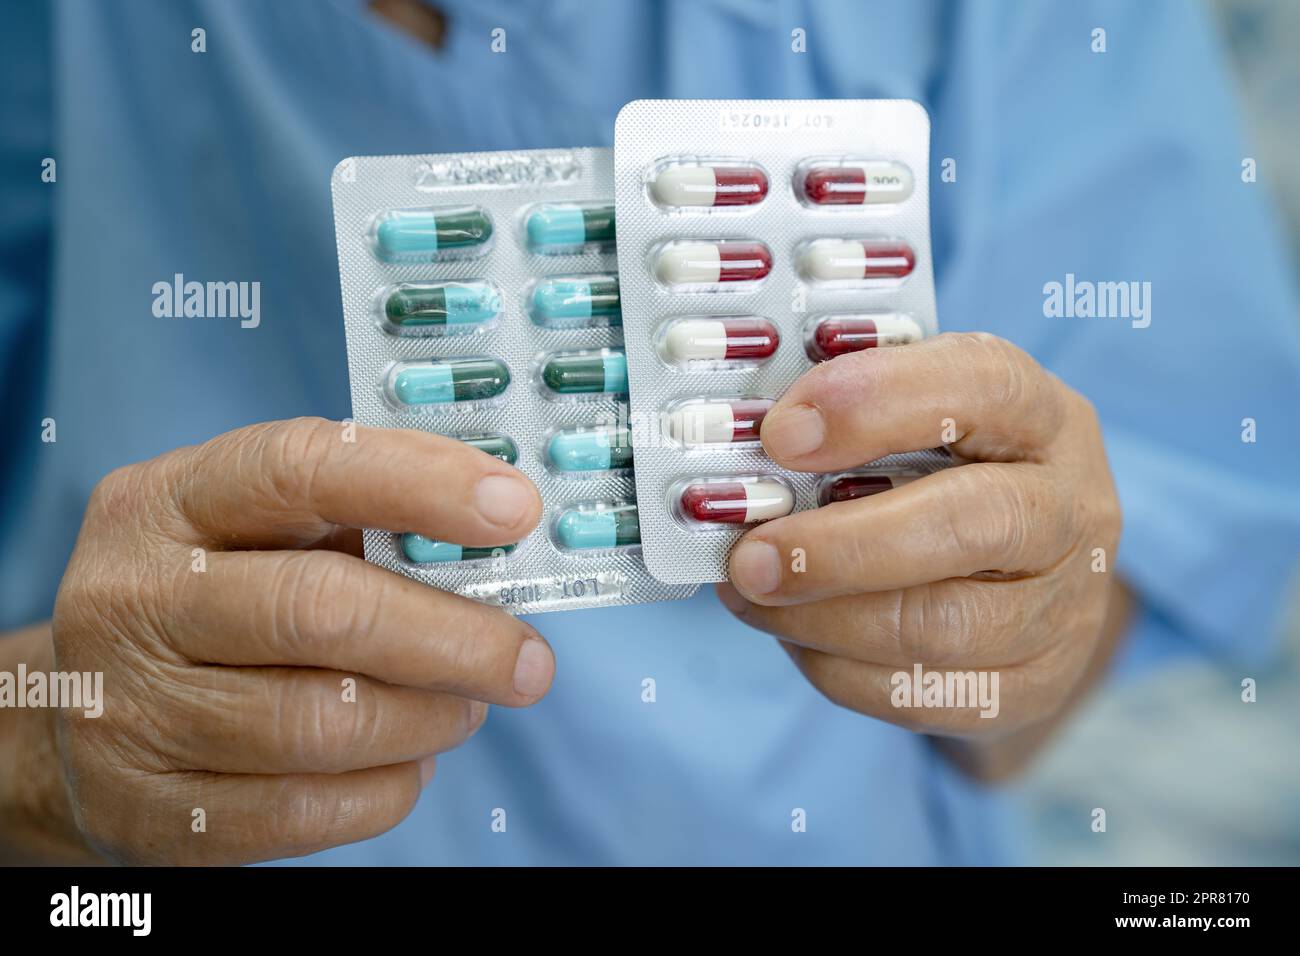 Asiatique senior ou âgée vieille femme patiente tenant des antibiotiques capsule pilules dans l'emballage blister pour le traitement infection patient à l'hôpital, pharmacie concept de pharmacie. Pharmacie concept pharmacie. Banque D'Images